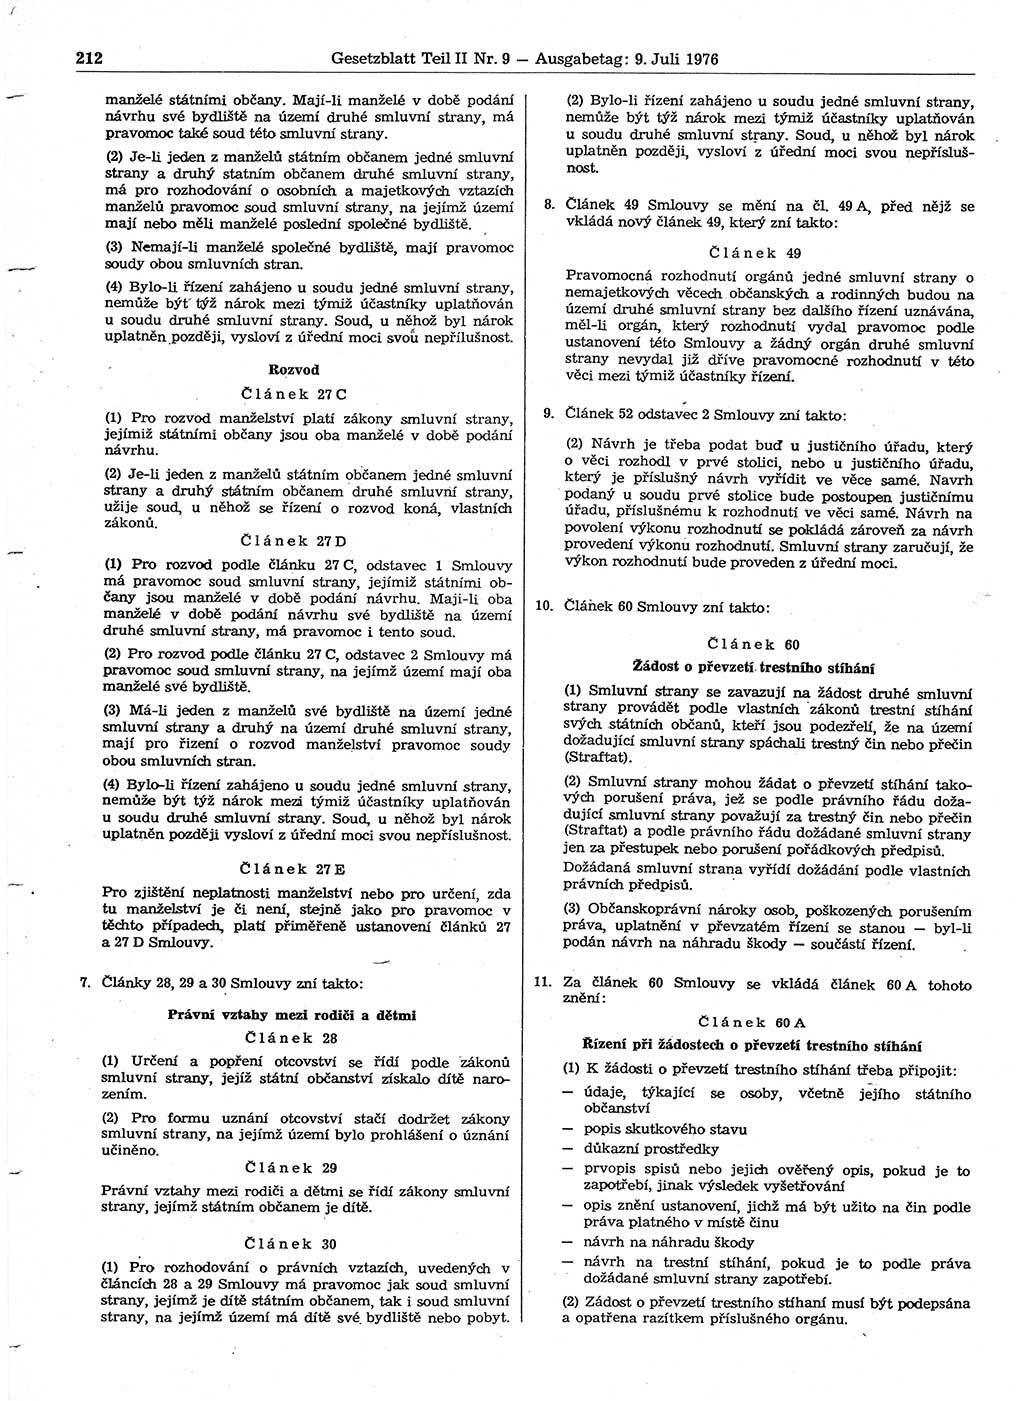 Gesetzblatt (GBl.) der Deutschen Demokratischen Republik (DDR) Teil ⅠⅠ 1976, Seite 212 (GBl. DDR ⅠⅠ 1976, S. 212)